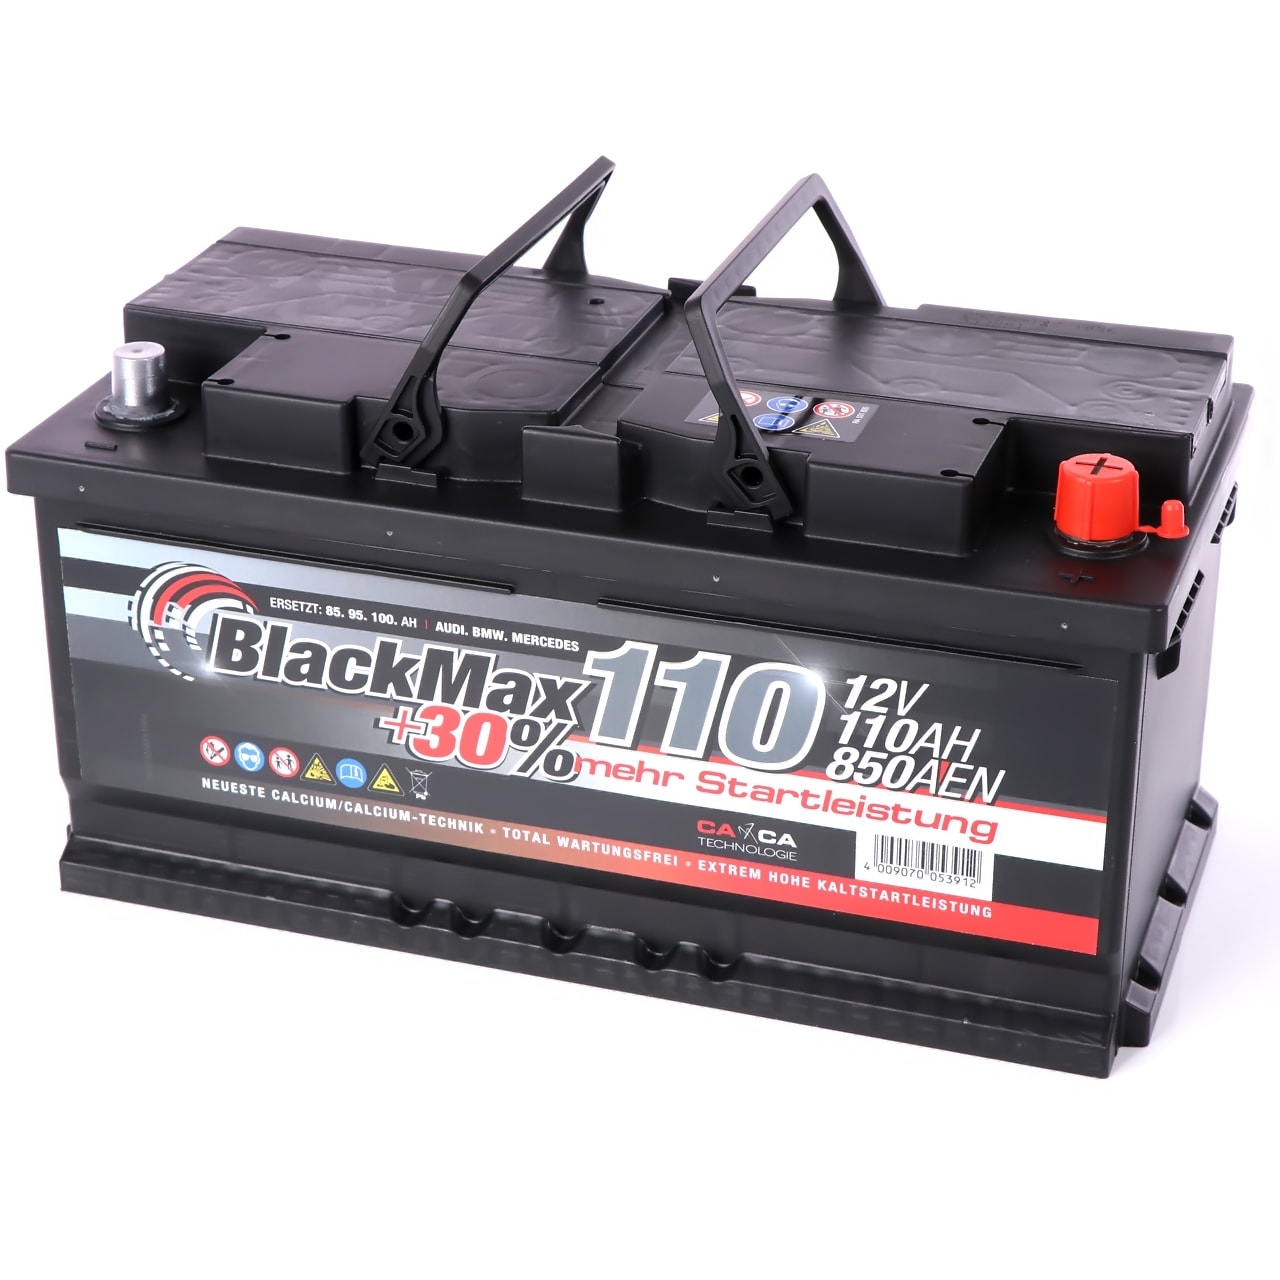 Autobatterie 12V 110Ah BlackMax 30 Edition statt 100Ah